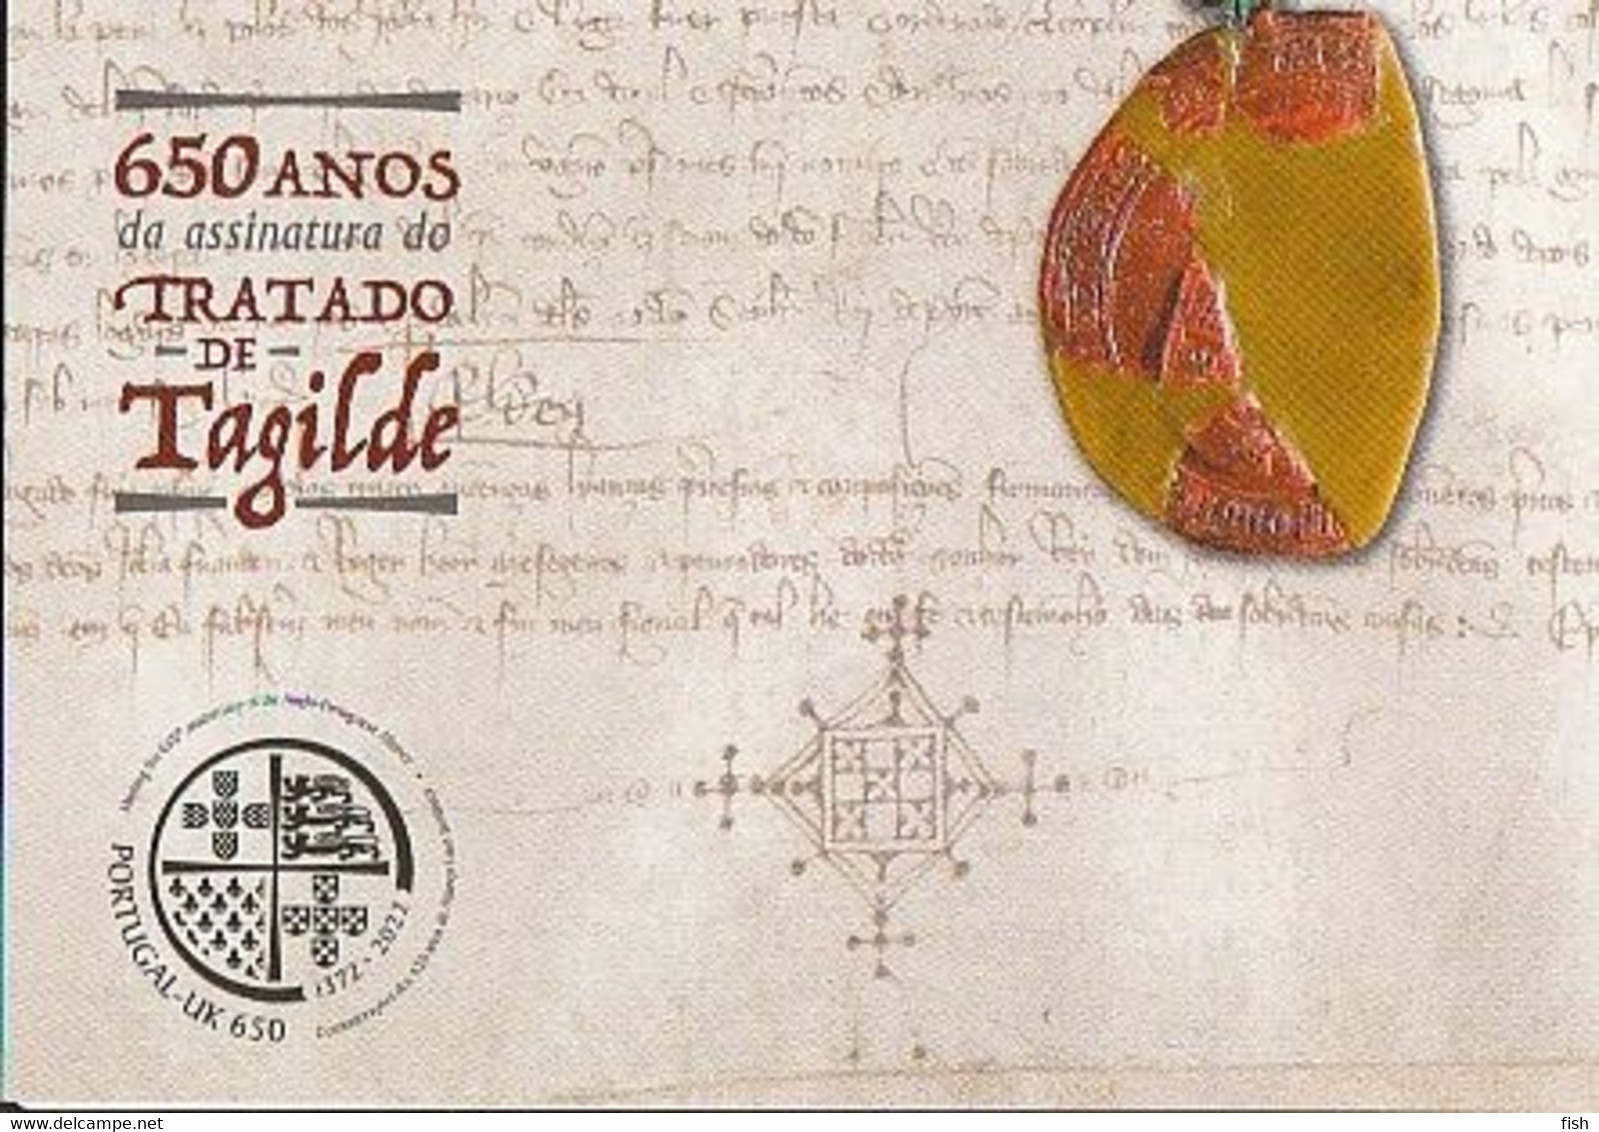 Portugal ** & Postal Stationary, 650 Anos Da Assinatura Do Tratado De Tagilde, Portugal E Gran Bretanha 1372-2022 (838) - Entiers Postaux